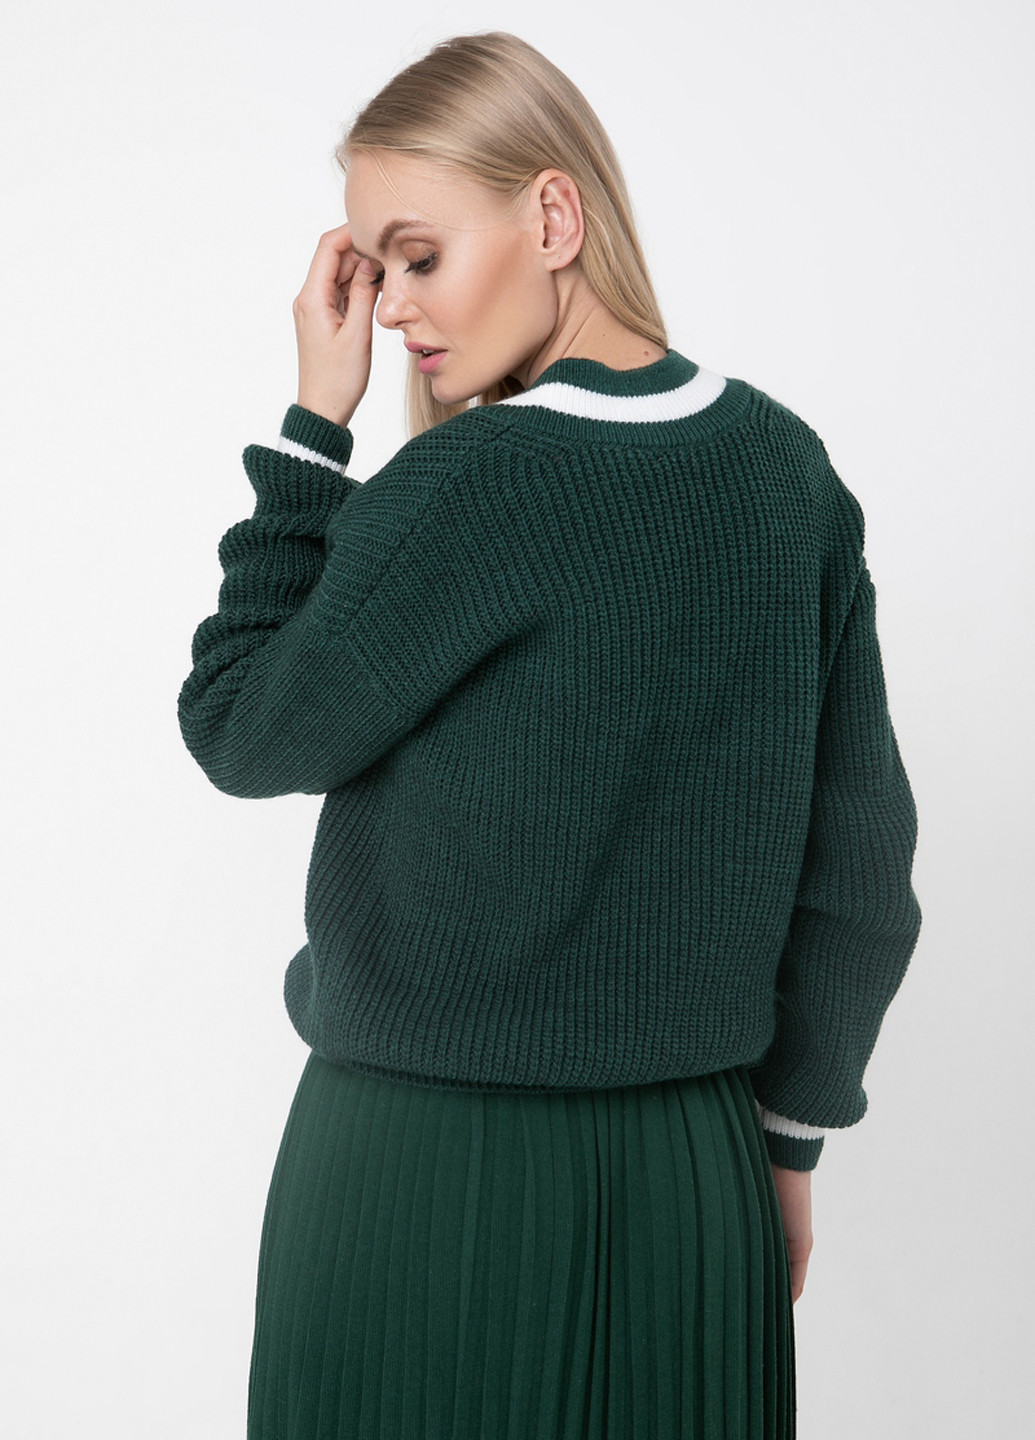 Темно-зеленый демисезонный пуловер пуловер Sewel